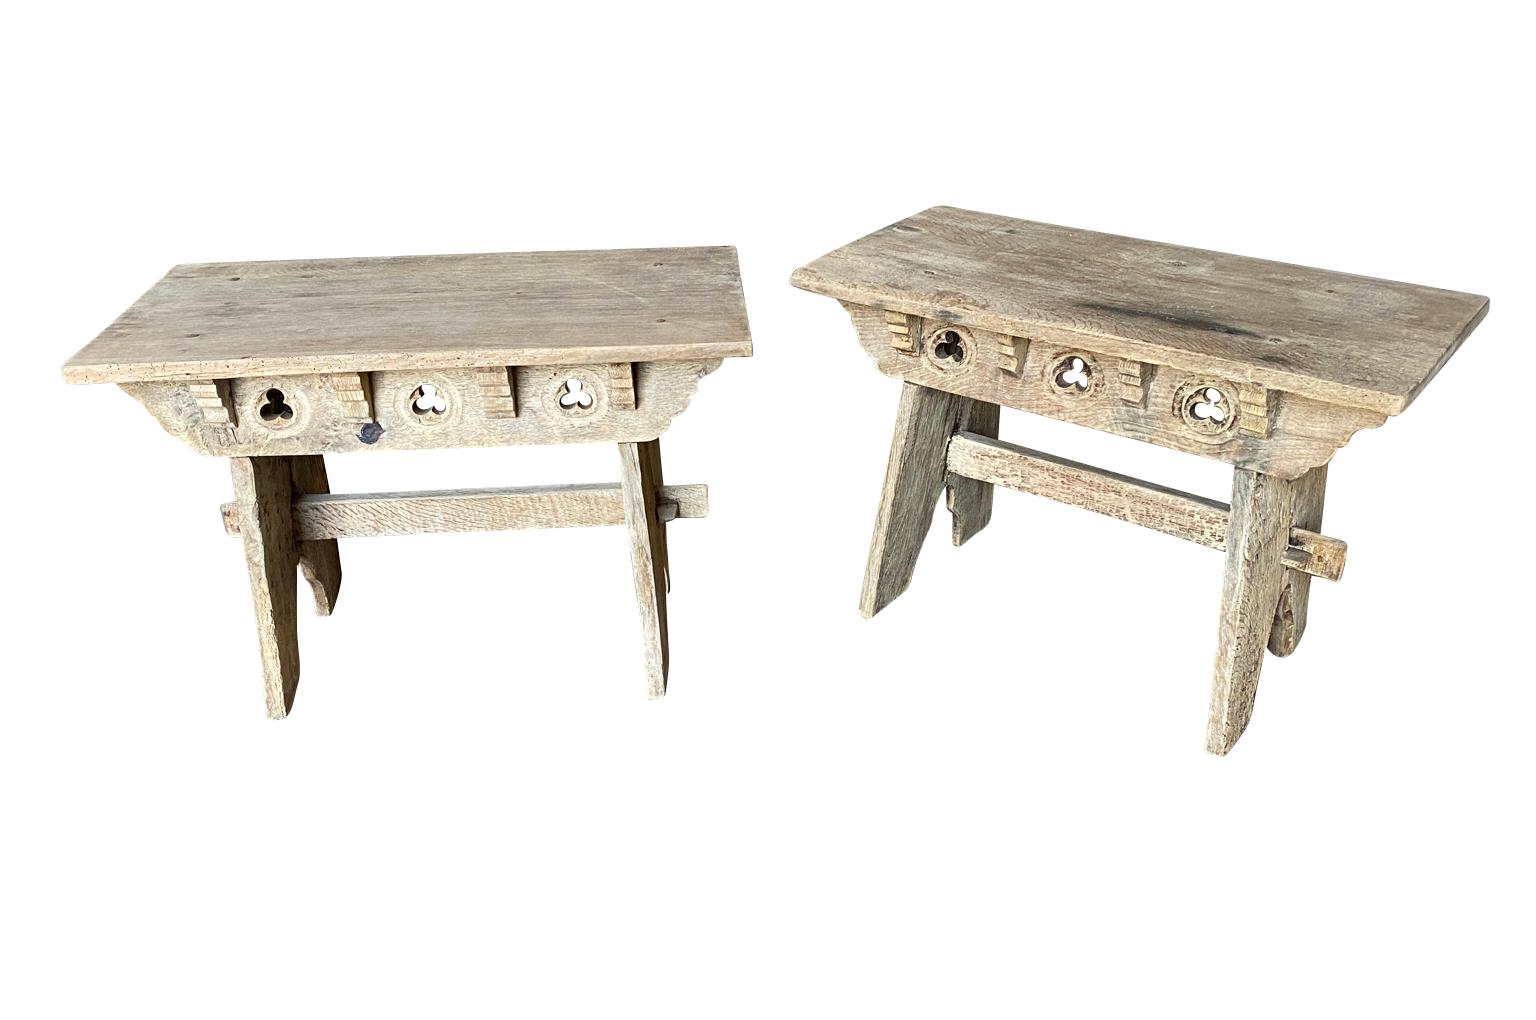 Ein charmantes Paar rustikaler niedriger Tische - Bänke aus der katalanischen Region Frankreichs.  Schön konstruiert aus Eiche, jeweils mit Kleeblattmotiven.